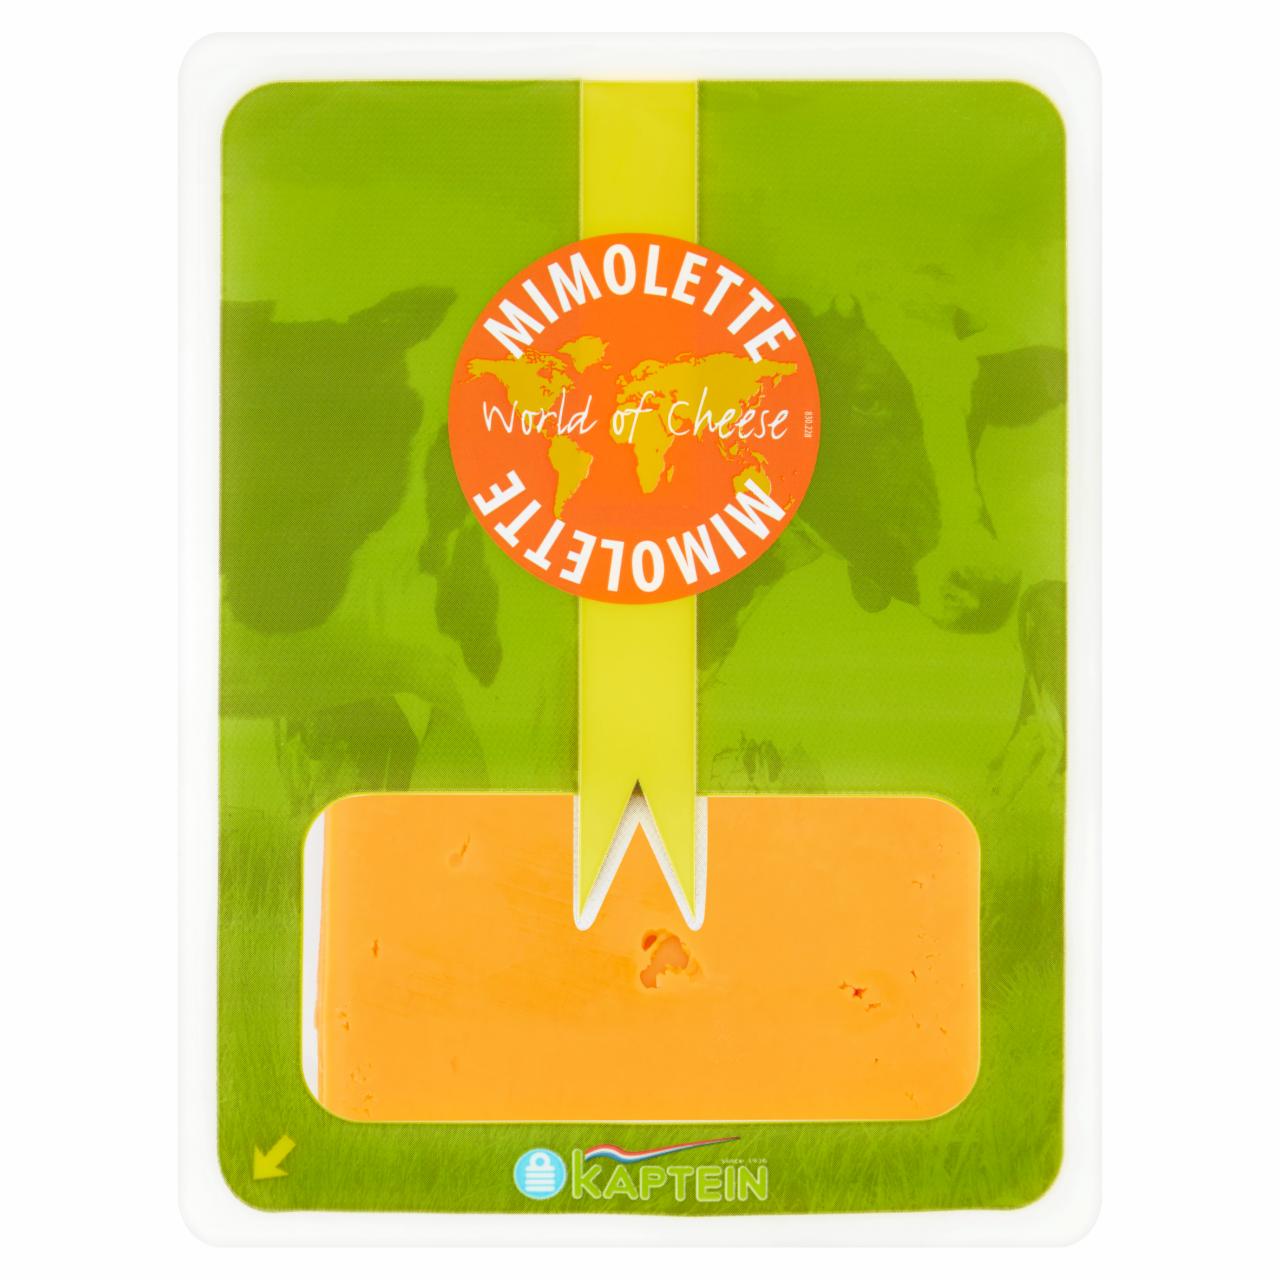 Képek - Kaptein Mimolette félkemény érlelt sajt 100 g